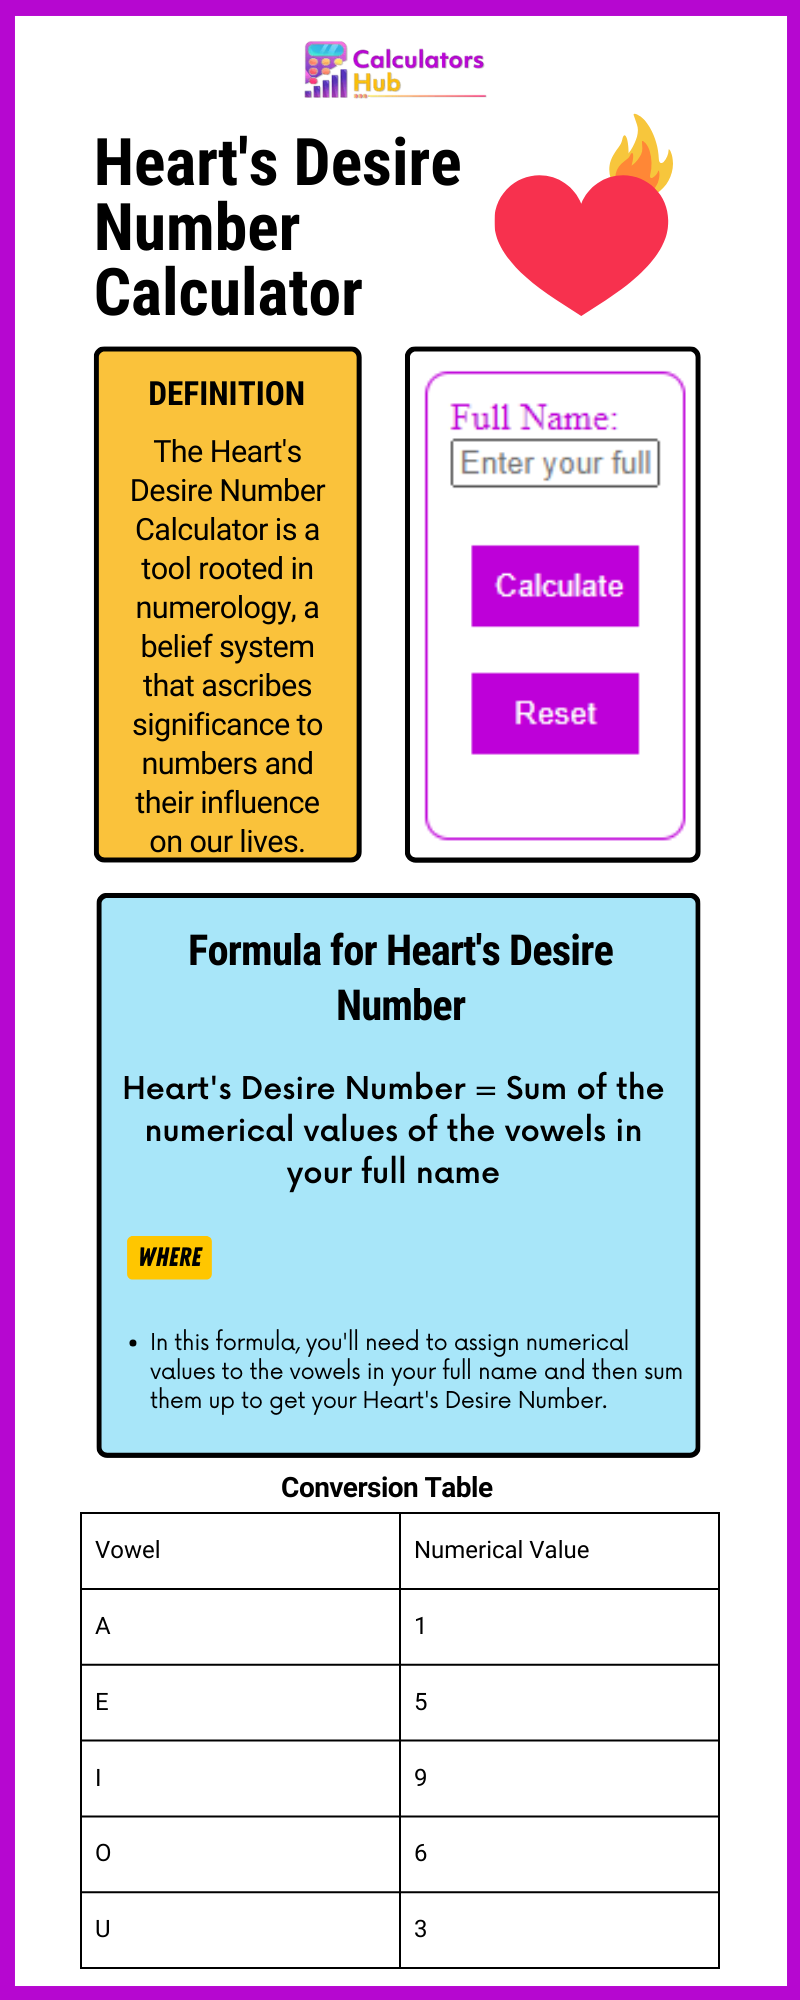 Calculateur de nombres de désirs du cœur